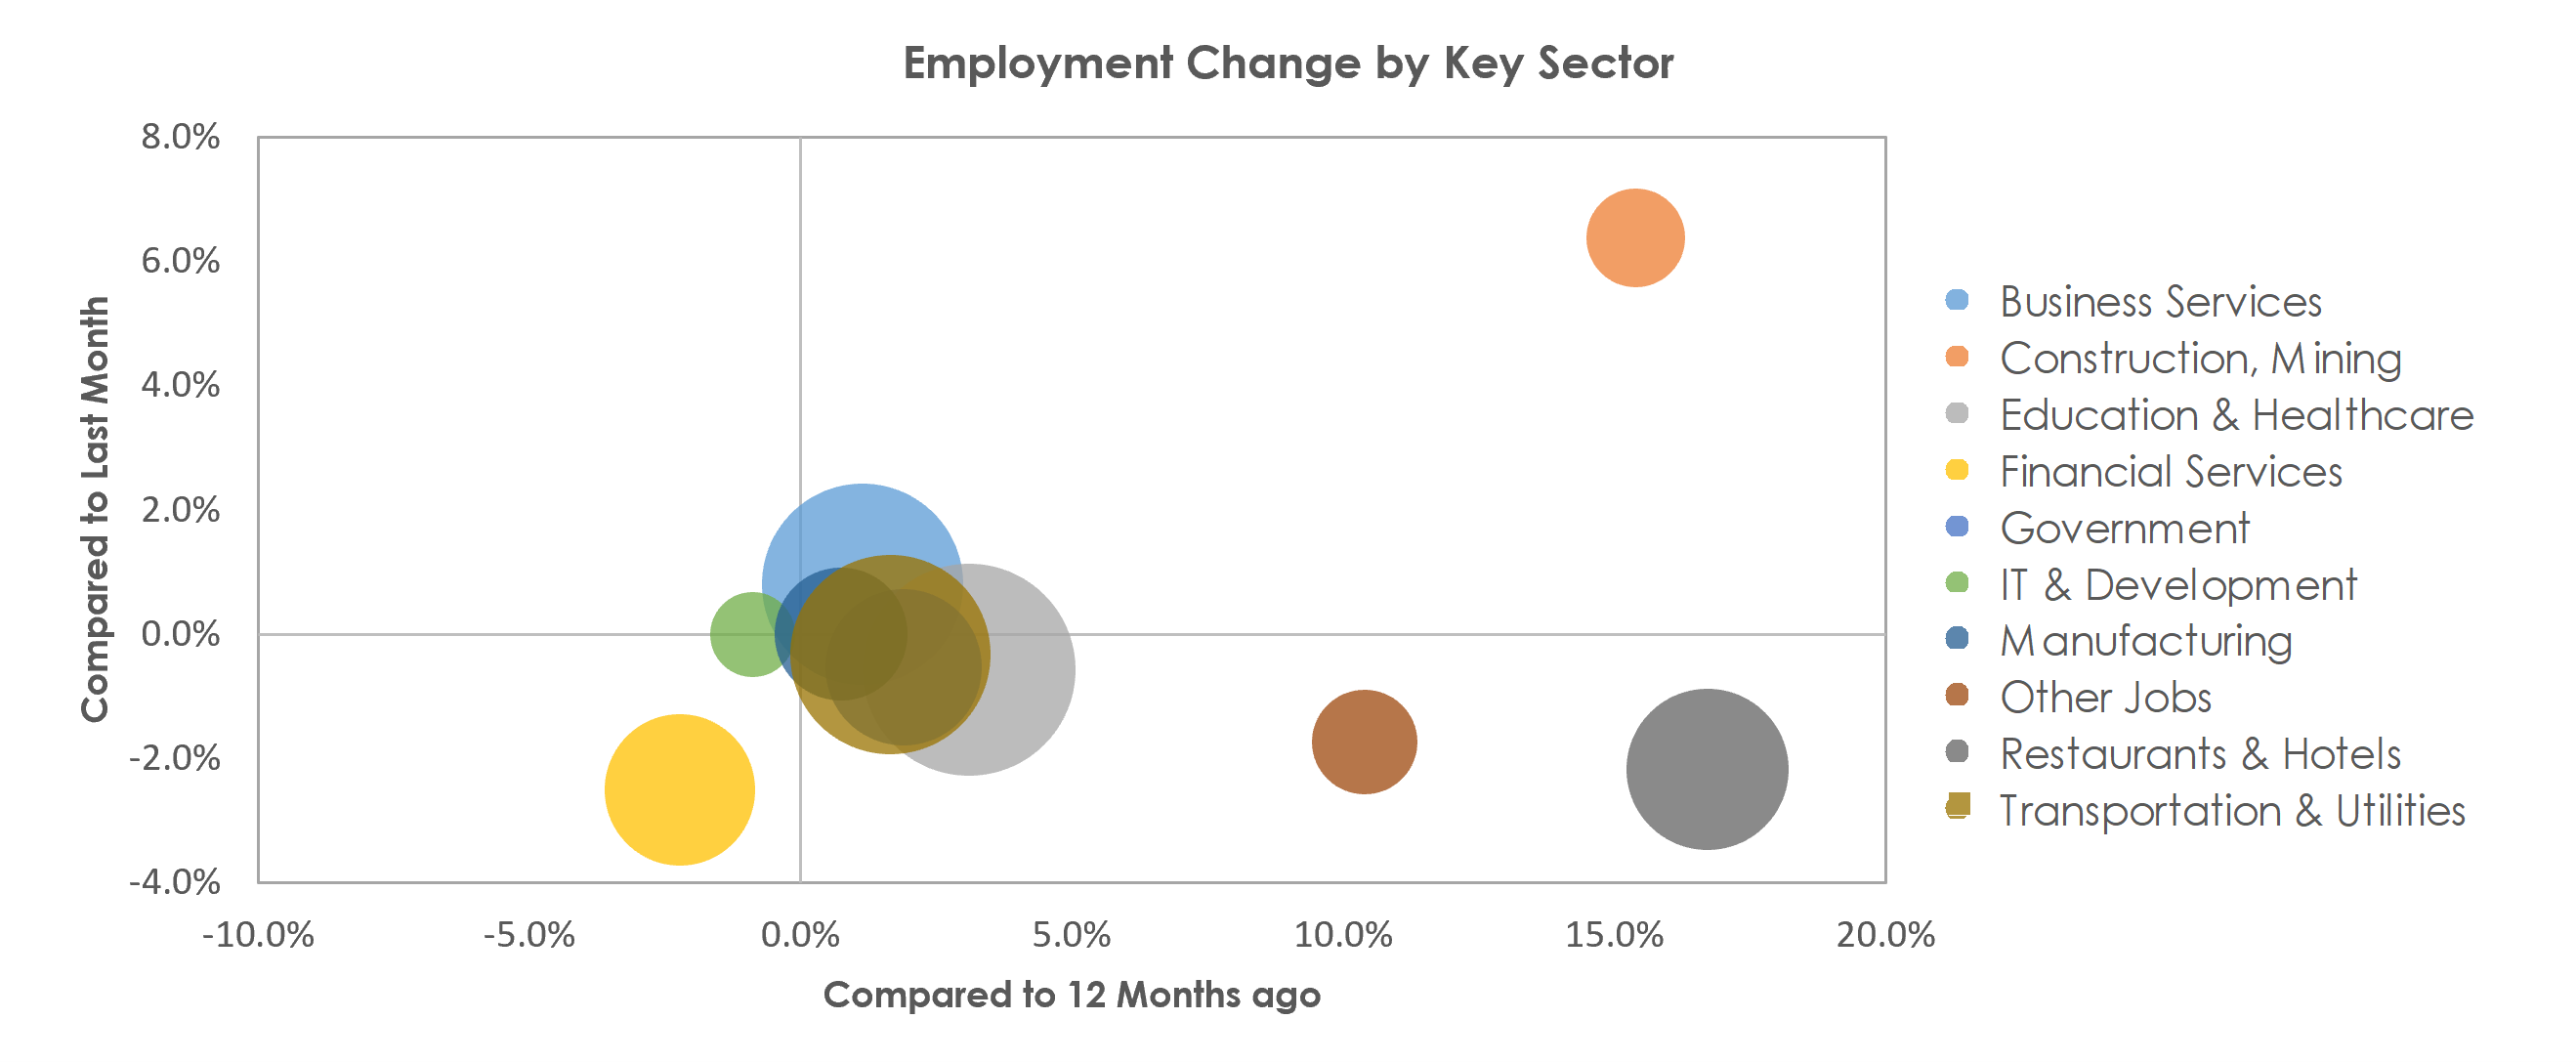 Bridgeport-Stamford-Norwalk, CT Unemployment by Industry August 2021